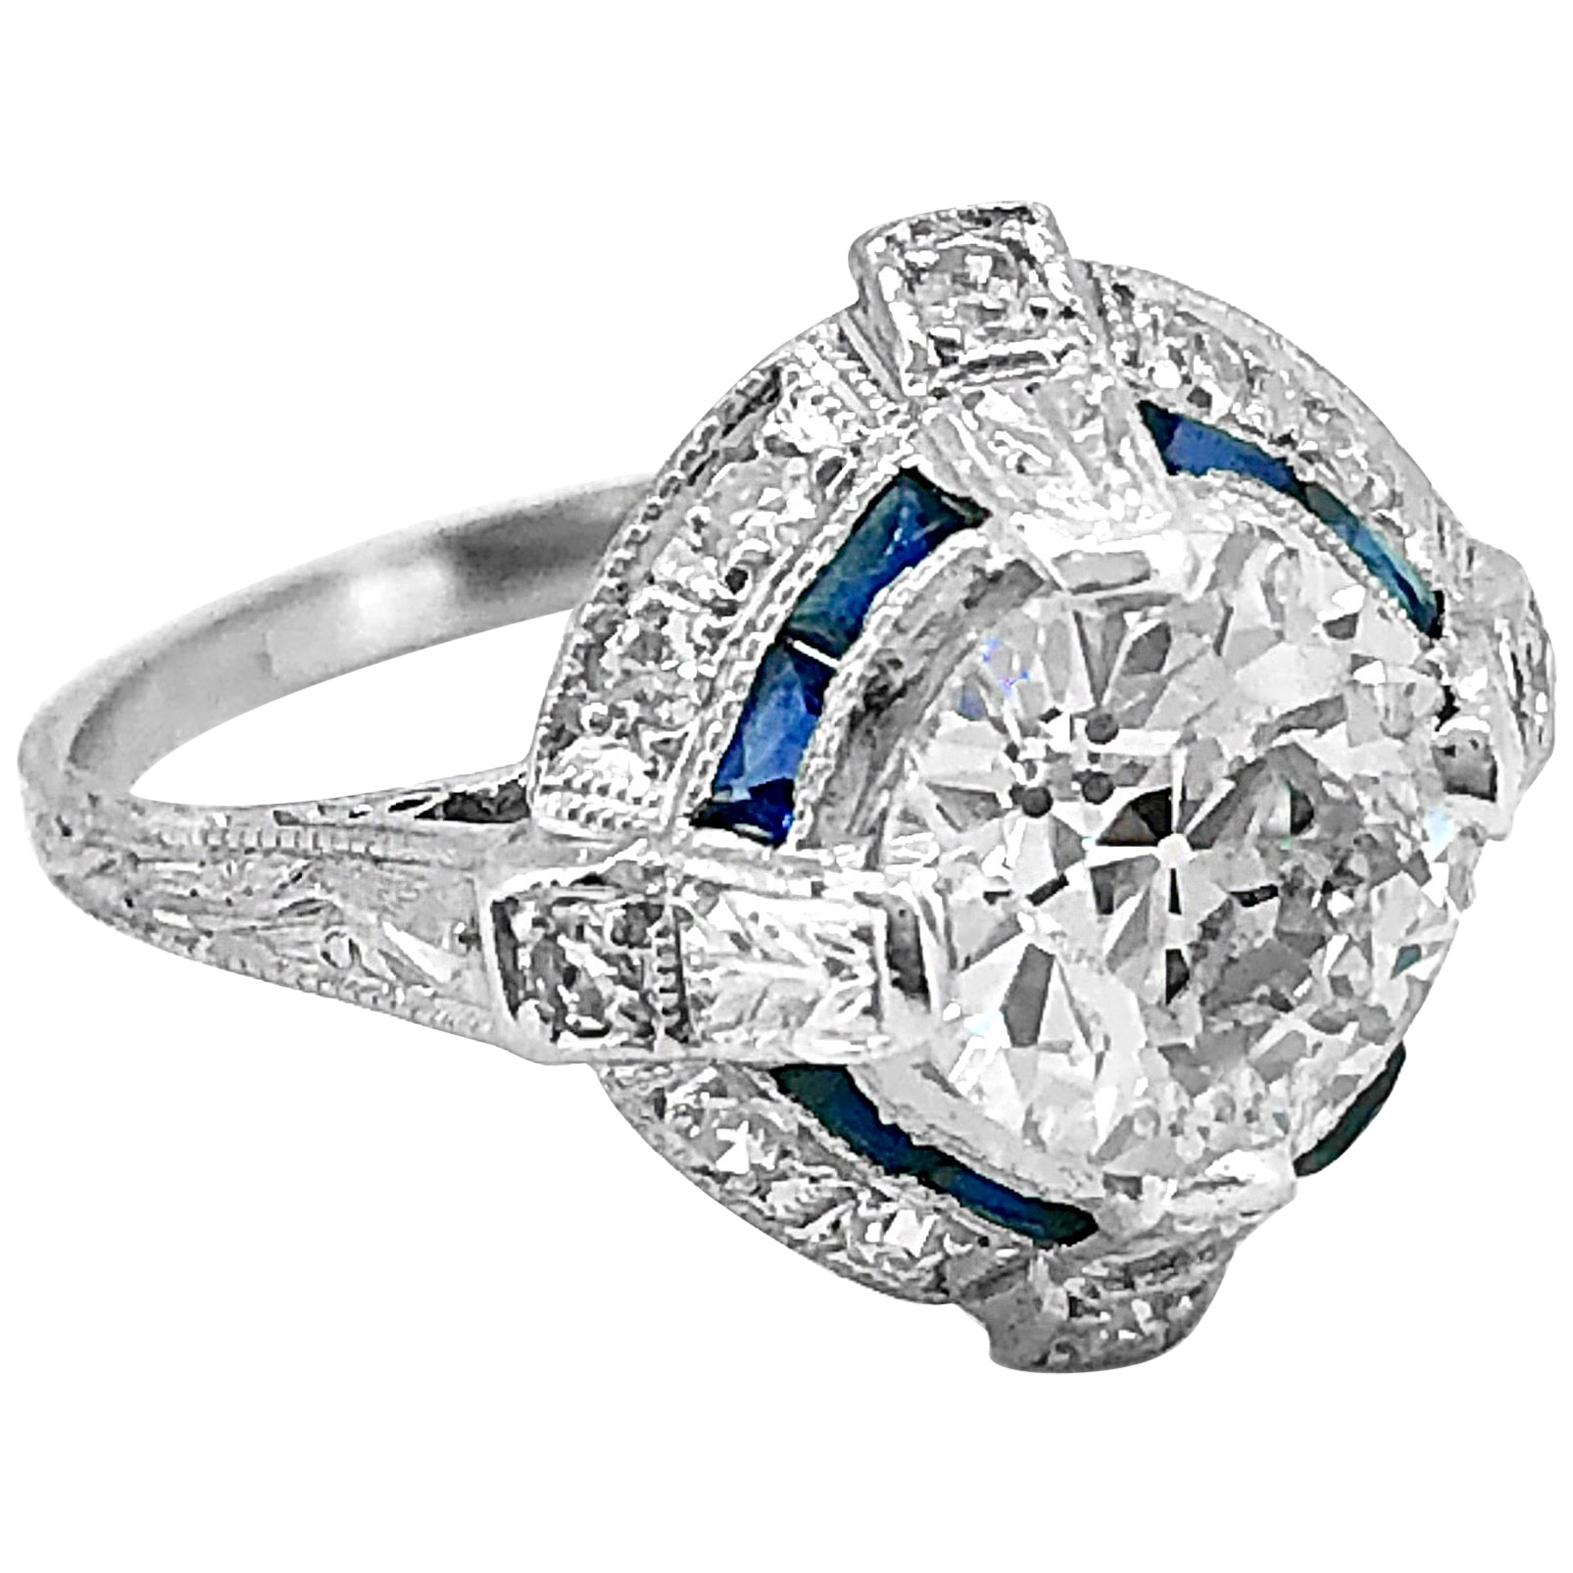 Platinum Art Deco 1.65 Carat Diamond and Sapphire Antique Engagement Ring